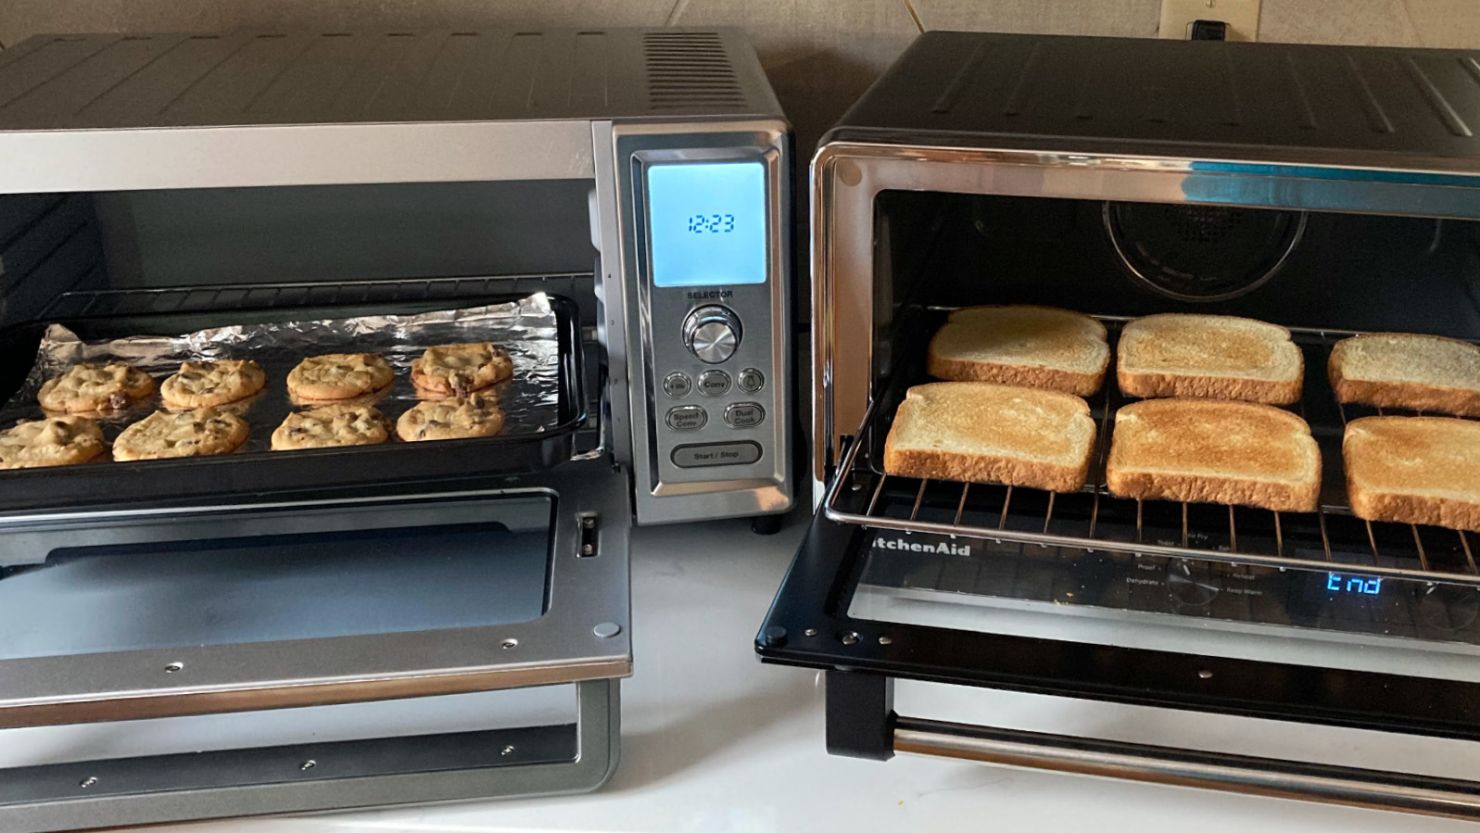 Multi-function Electric Oven Enamel Baking Household Oven Bake